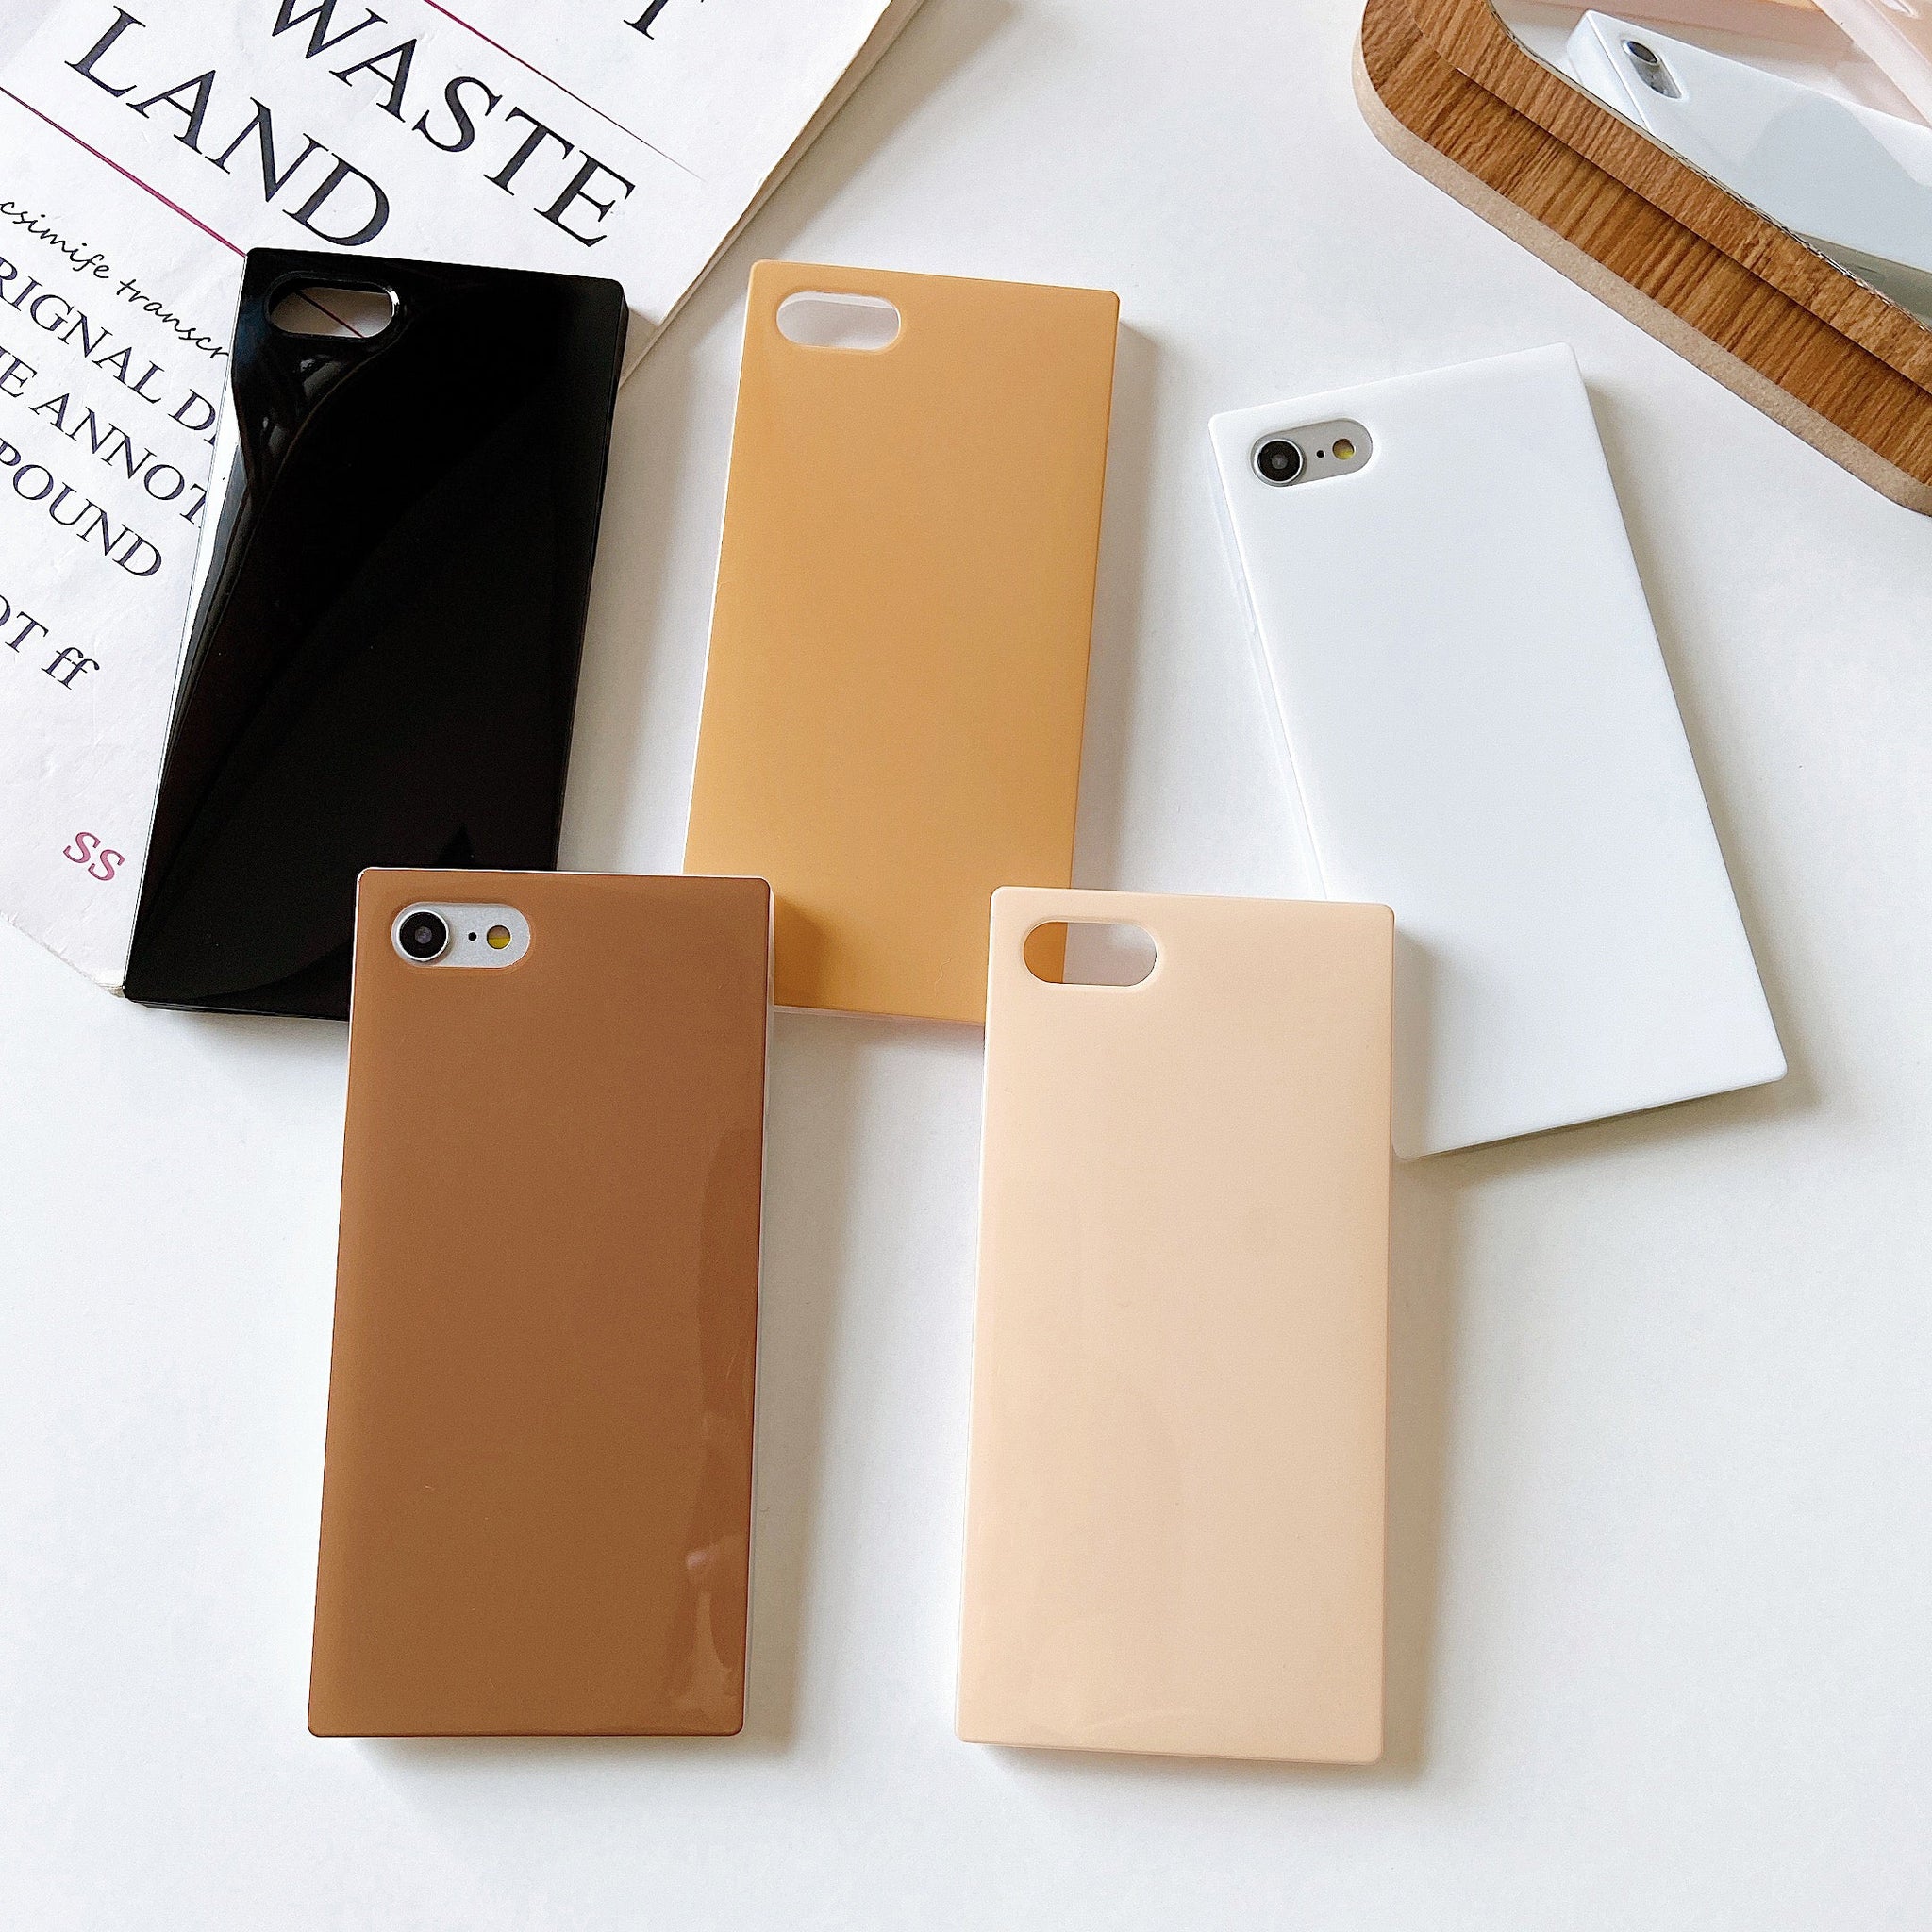 iPhone 8 Plus/7 Plus Case Square Neutral Plain Color (Caramel)